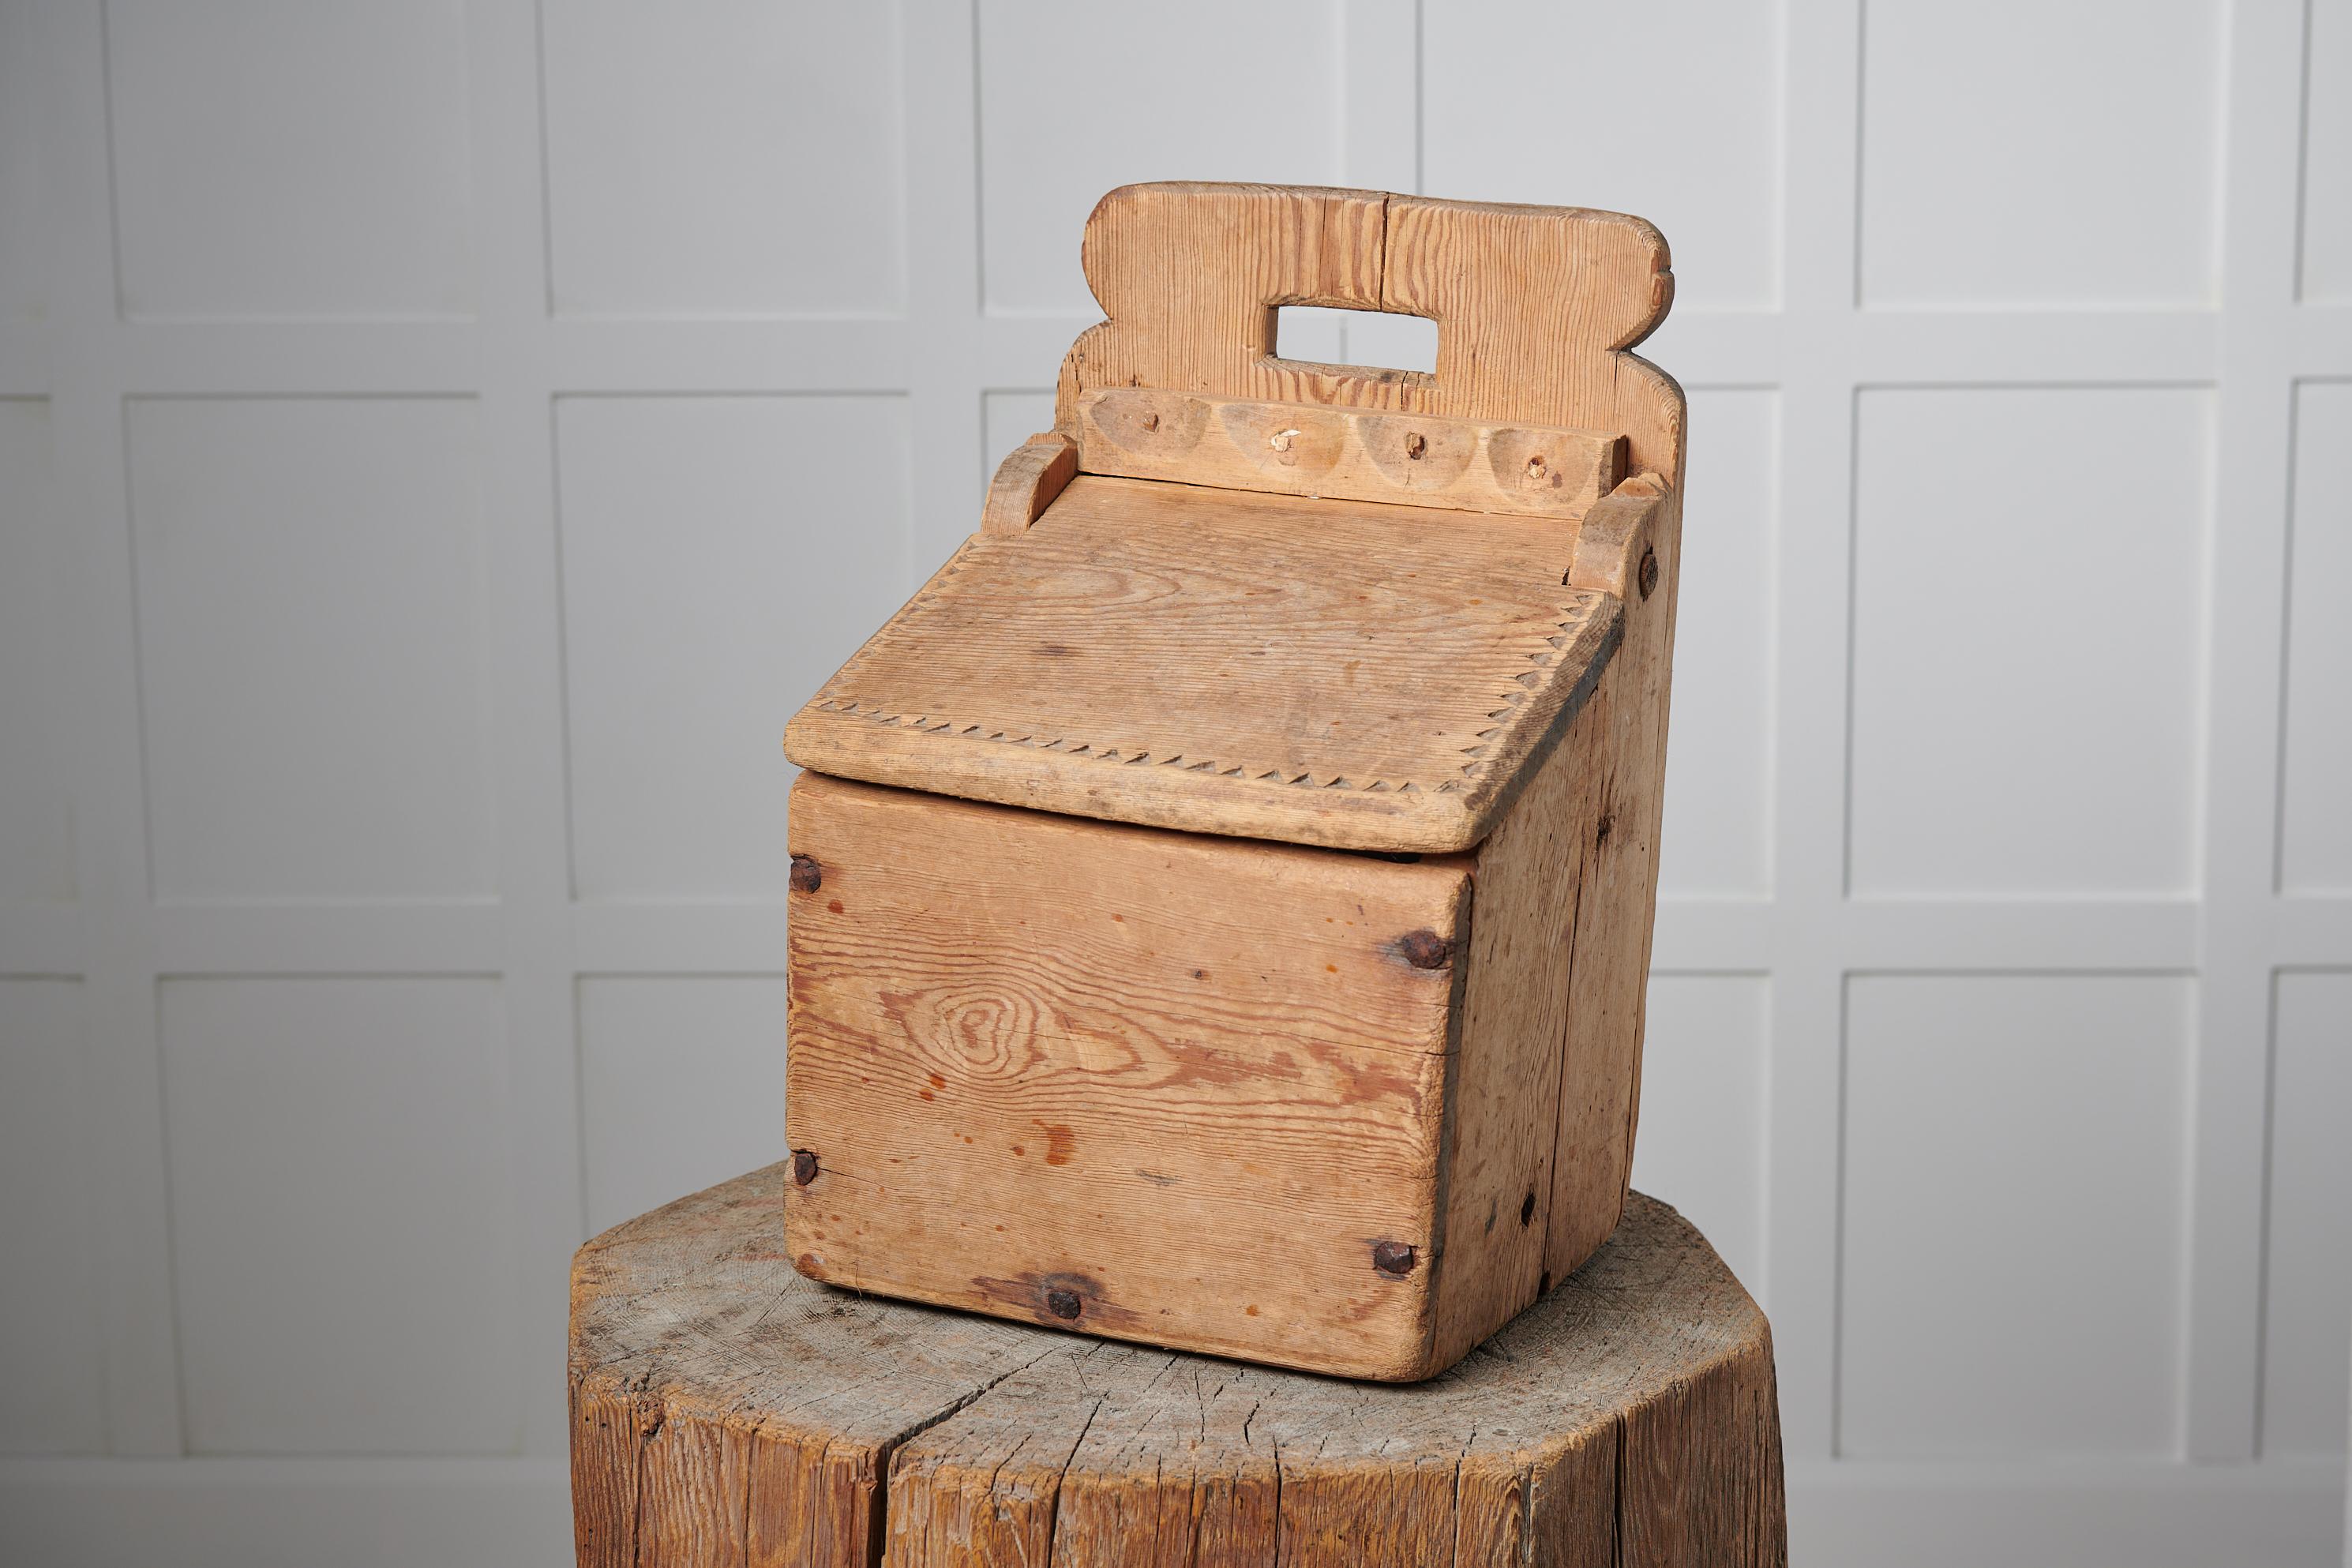 Volkskunst-Mehlbox aus Nordschweden. Die Kiste wurde Mitte des 19. Jahrhunderts in Handarbeit aus Kiefernholz hergestellt und diente zur Lagerung von Mehl. Boxen wie diese stehen frei auf der Theke oder hängen in der Küche an der Wand, damit das